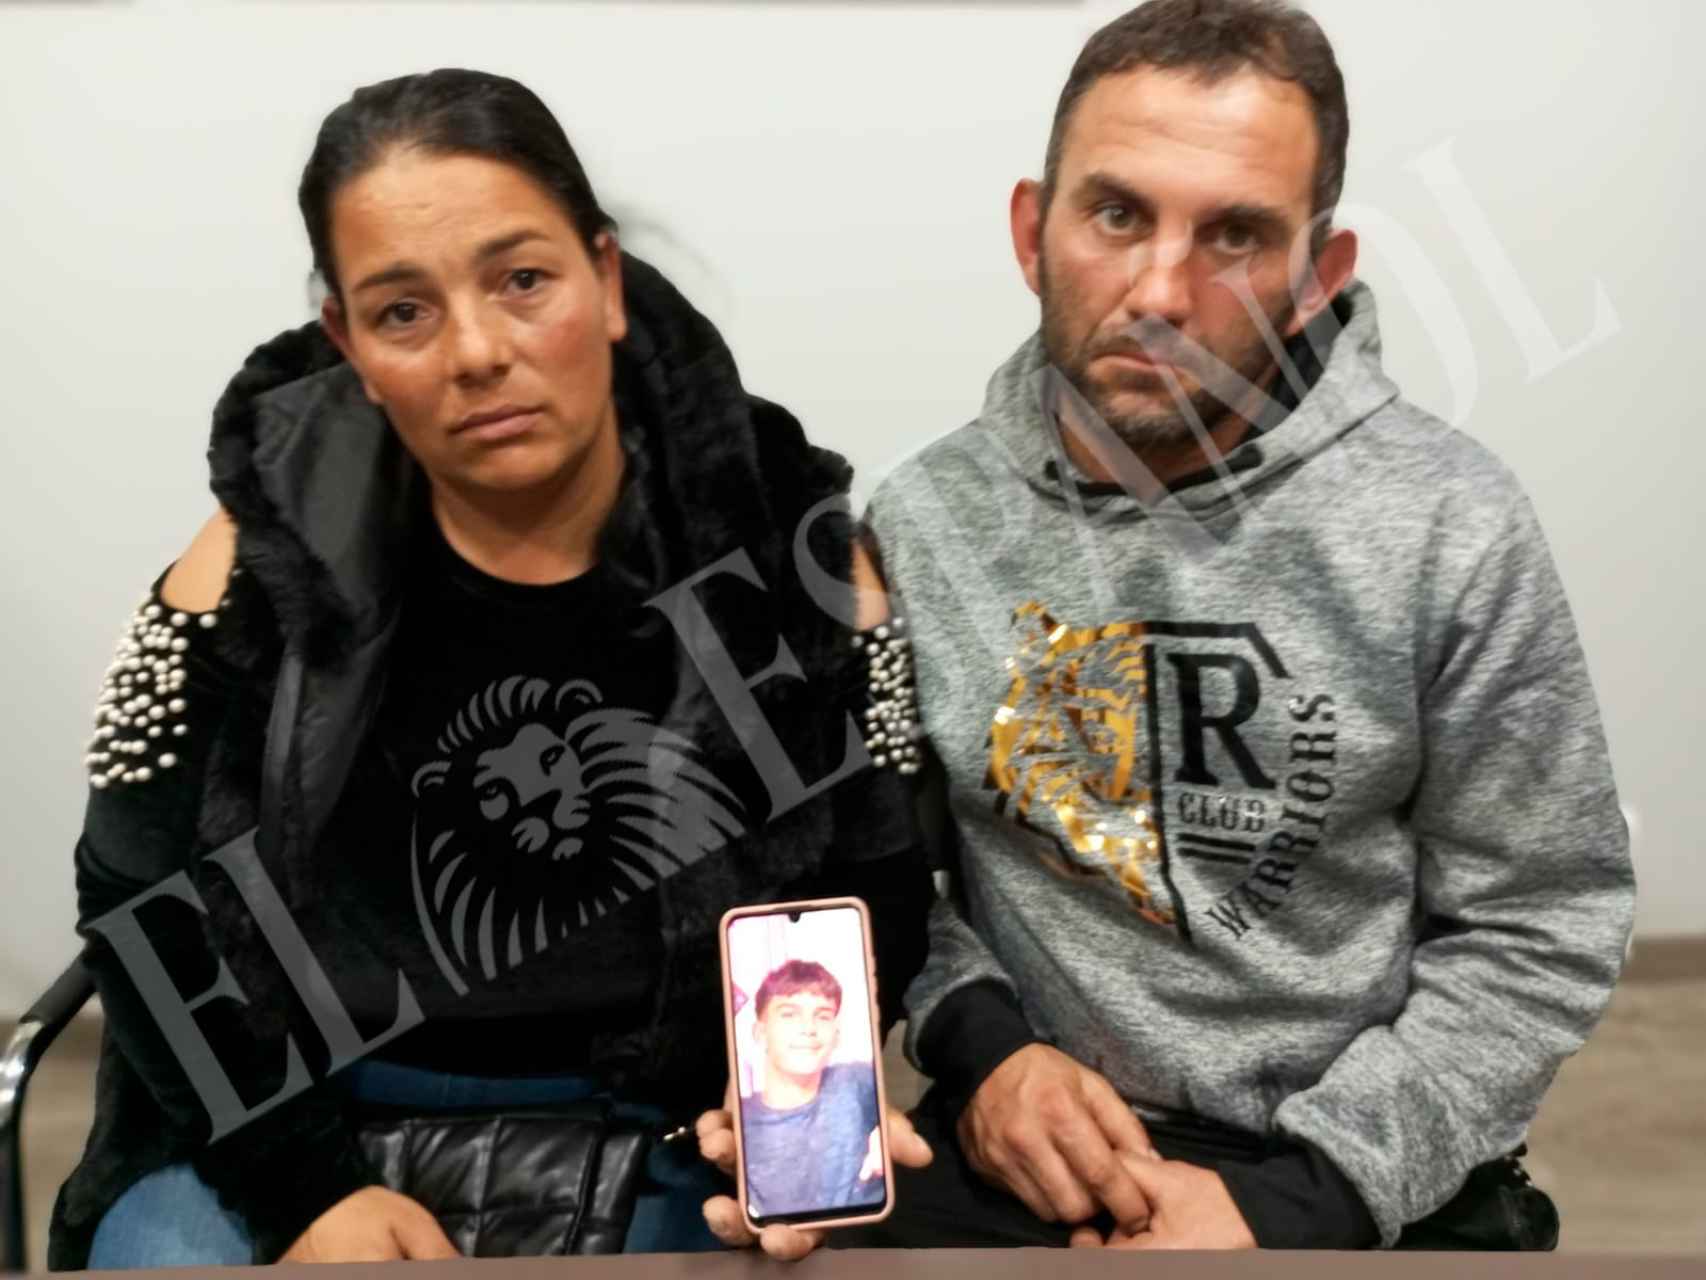 Miglena Petrova y Karsimir Nikolaev, este miércoles, completamente desolados, mostrando una foto de su hijo, Ivailo Petrov, desaparecido en el Mar Menor.